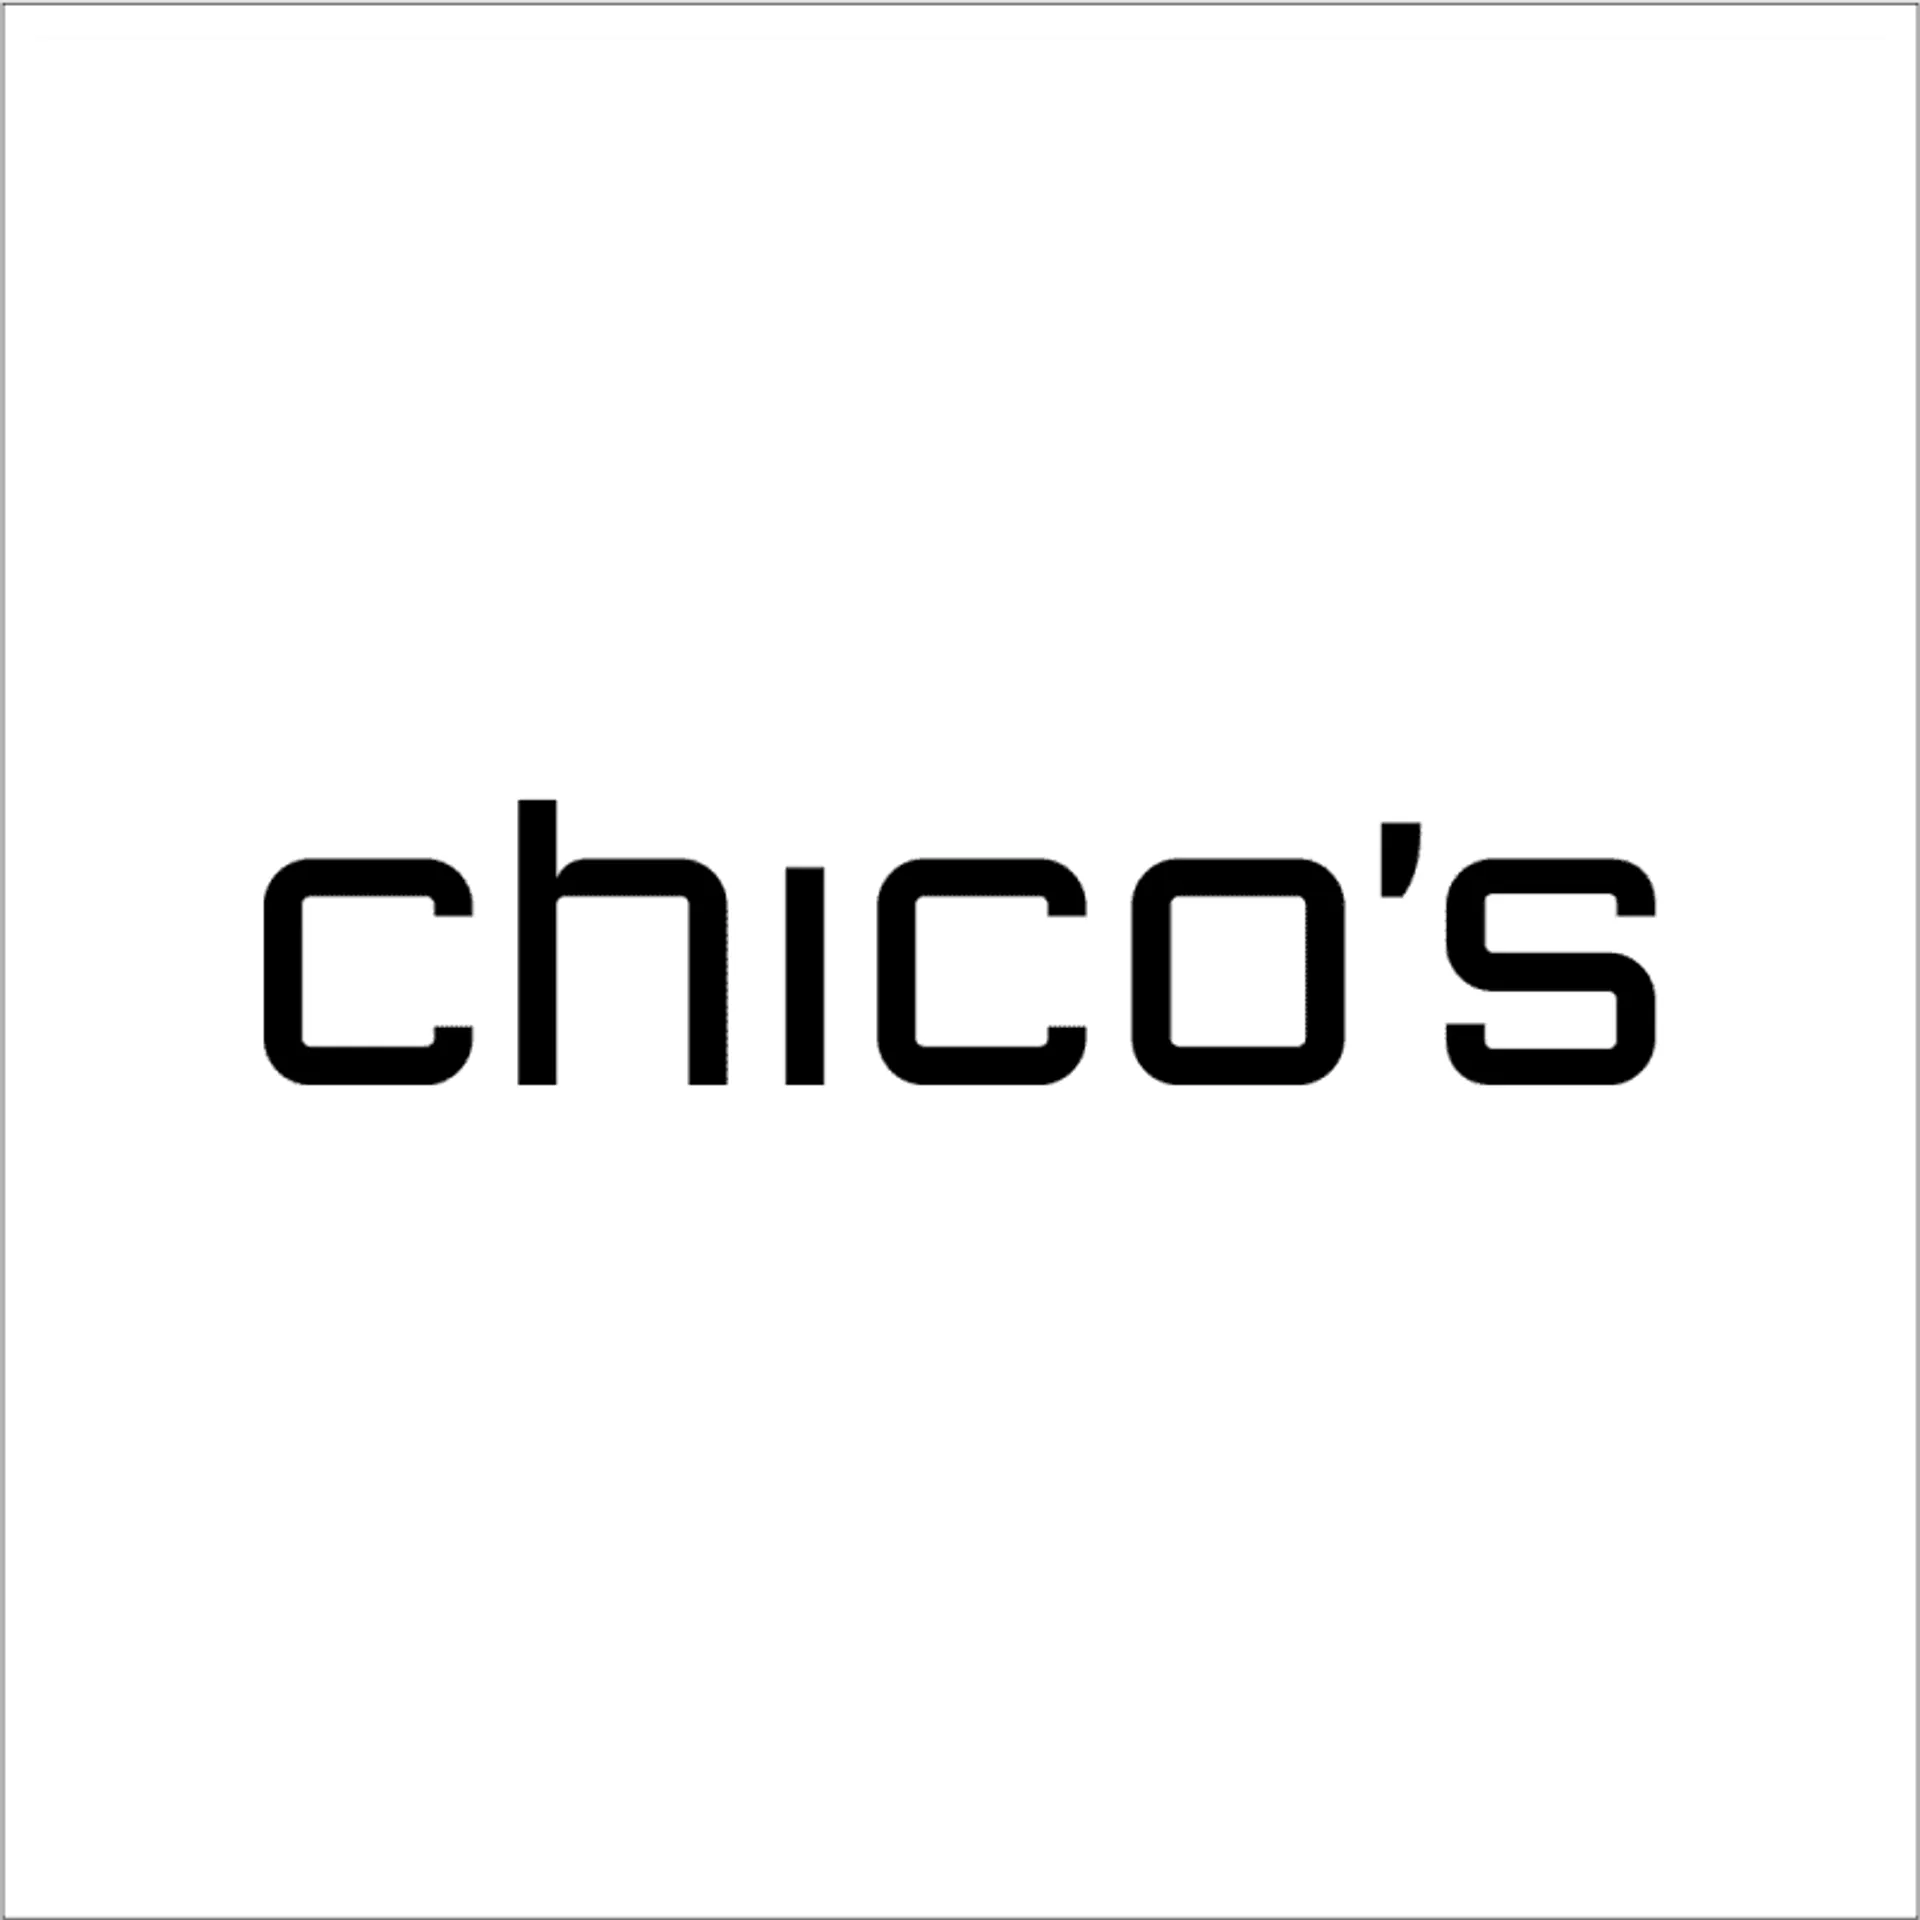 CHICOS logo